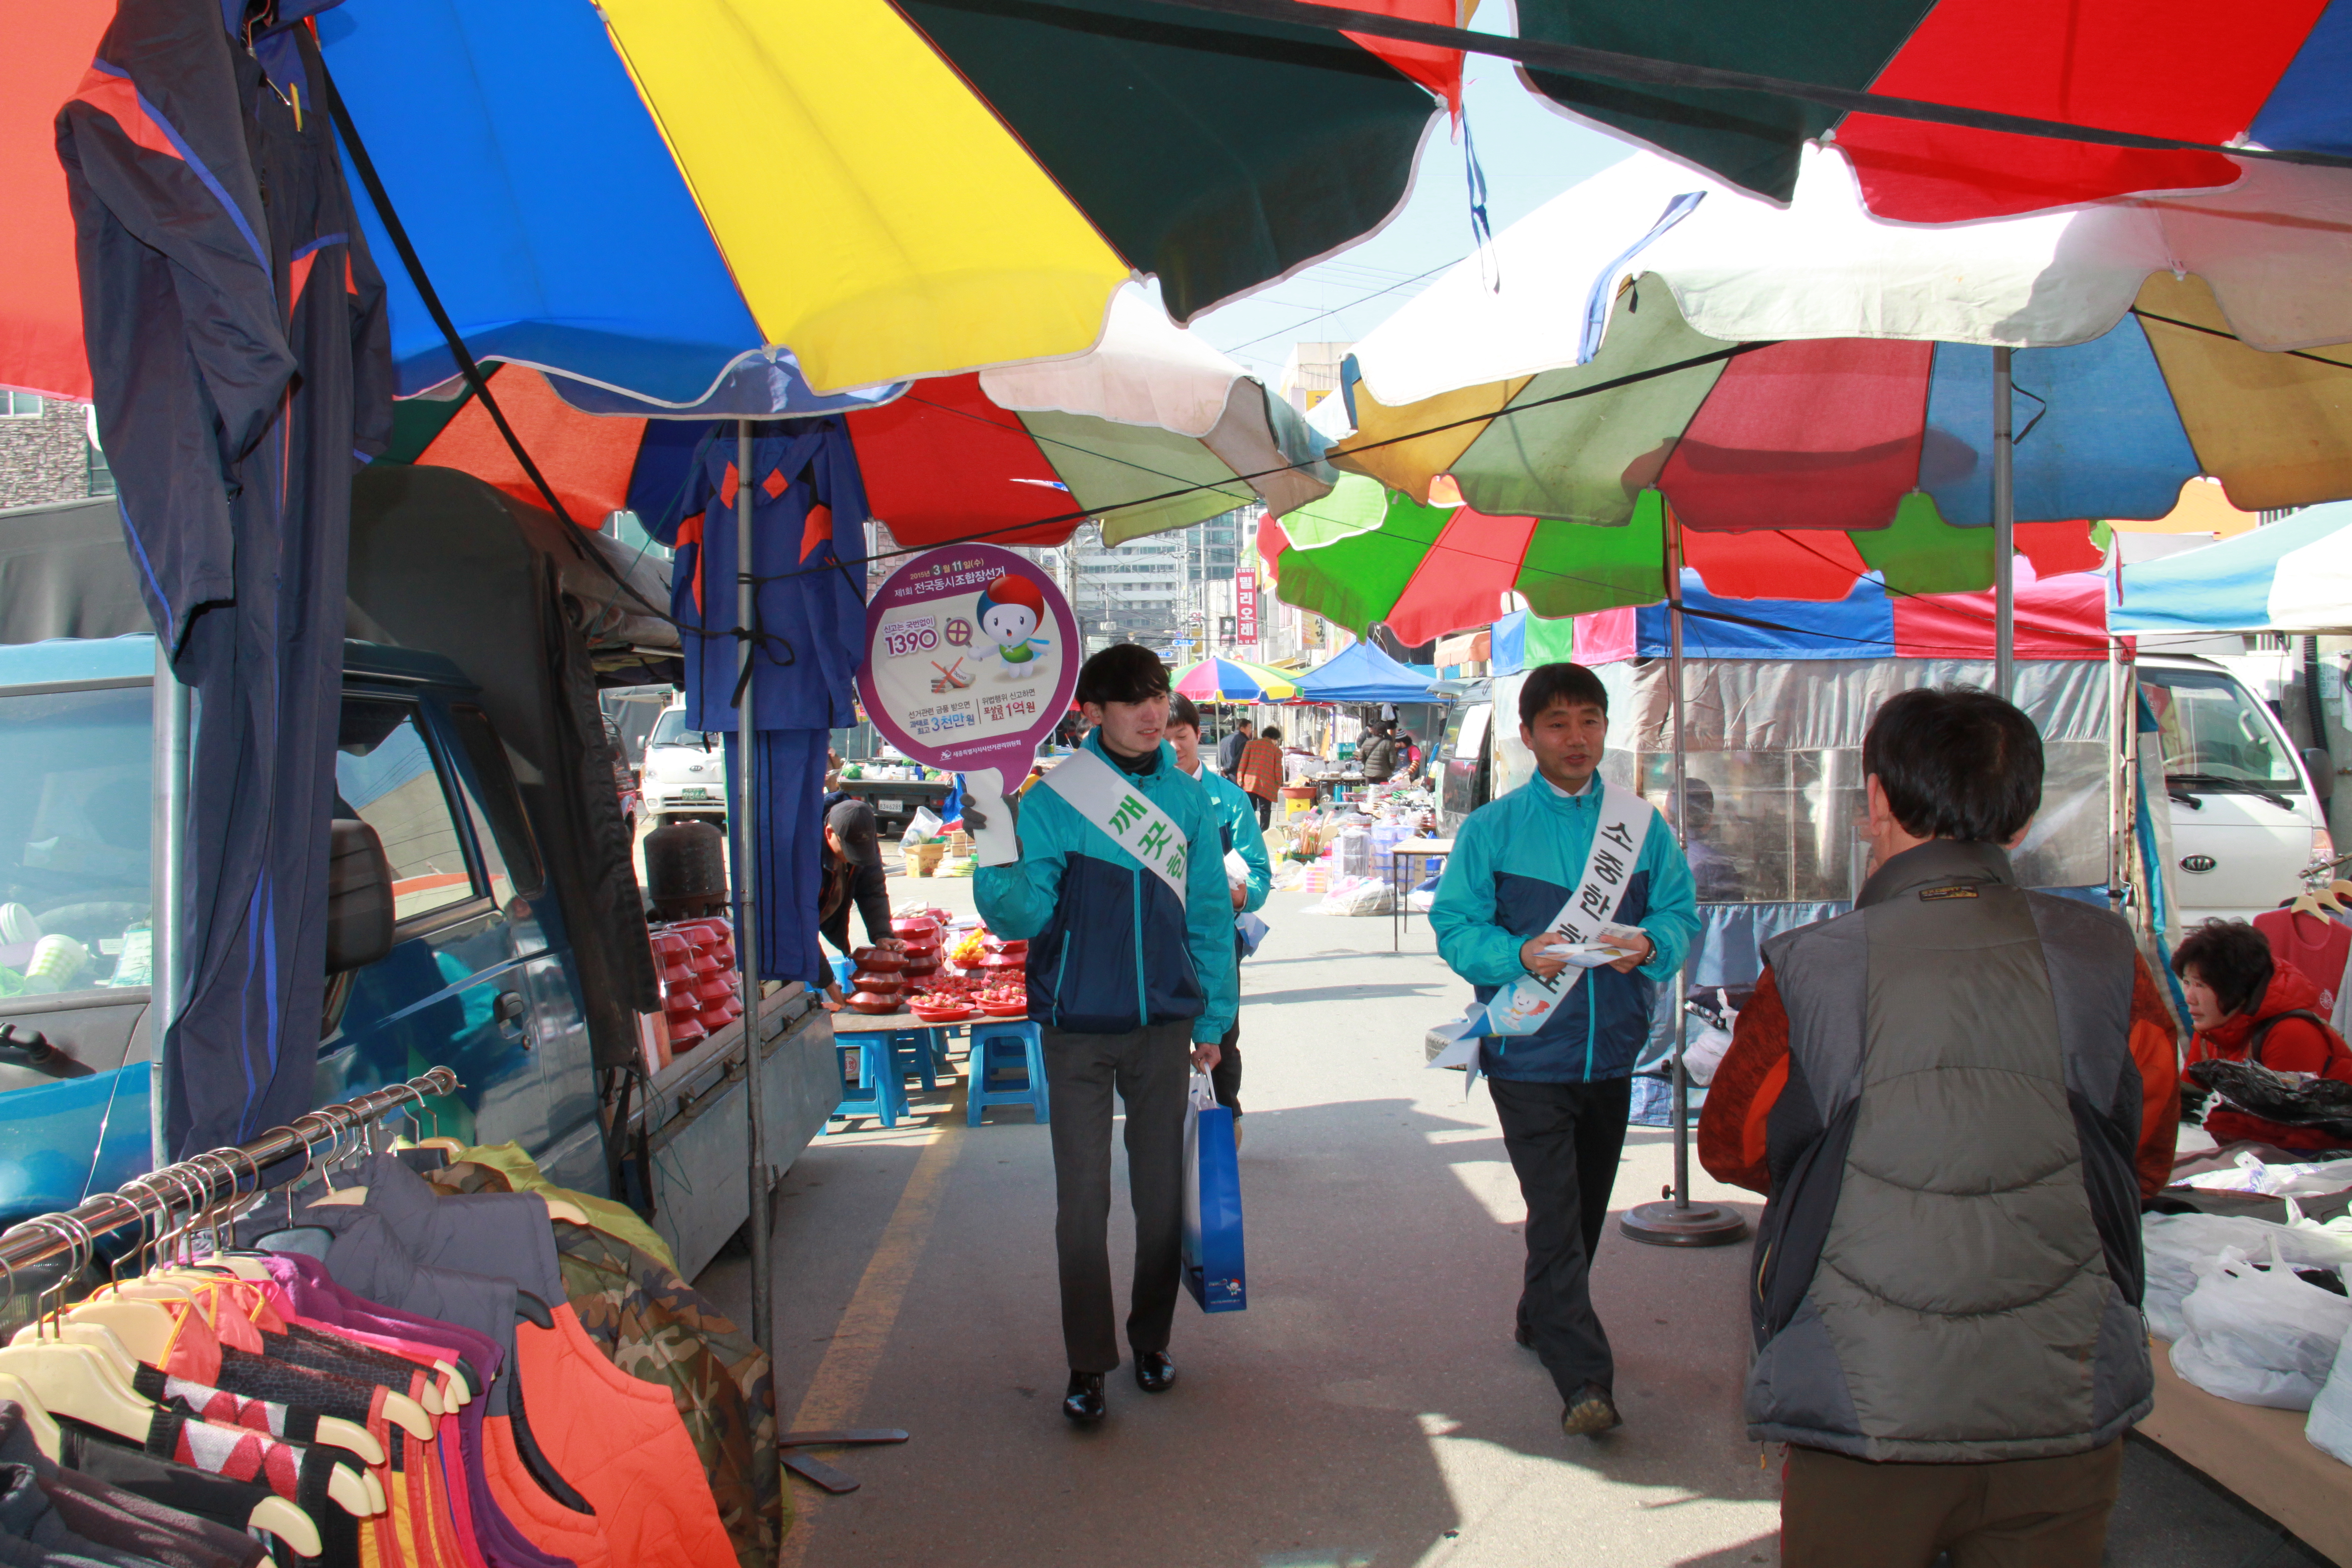 부강전통시장 5일장을 이용해 전국동시조합장선거 홍보캠페인을 실시한 모습을 찍은 사진입니다.